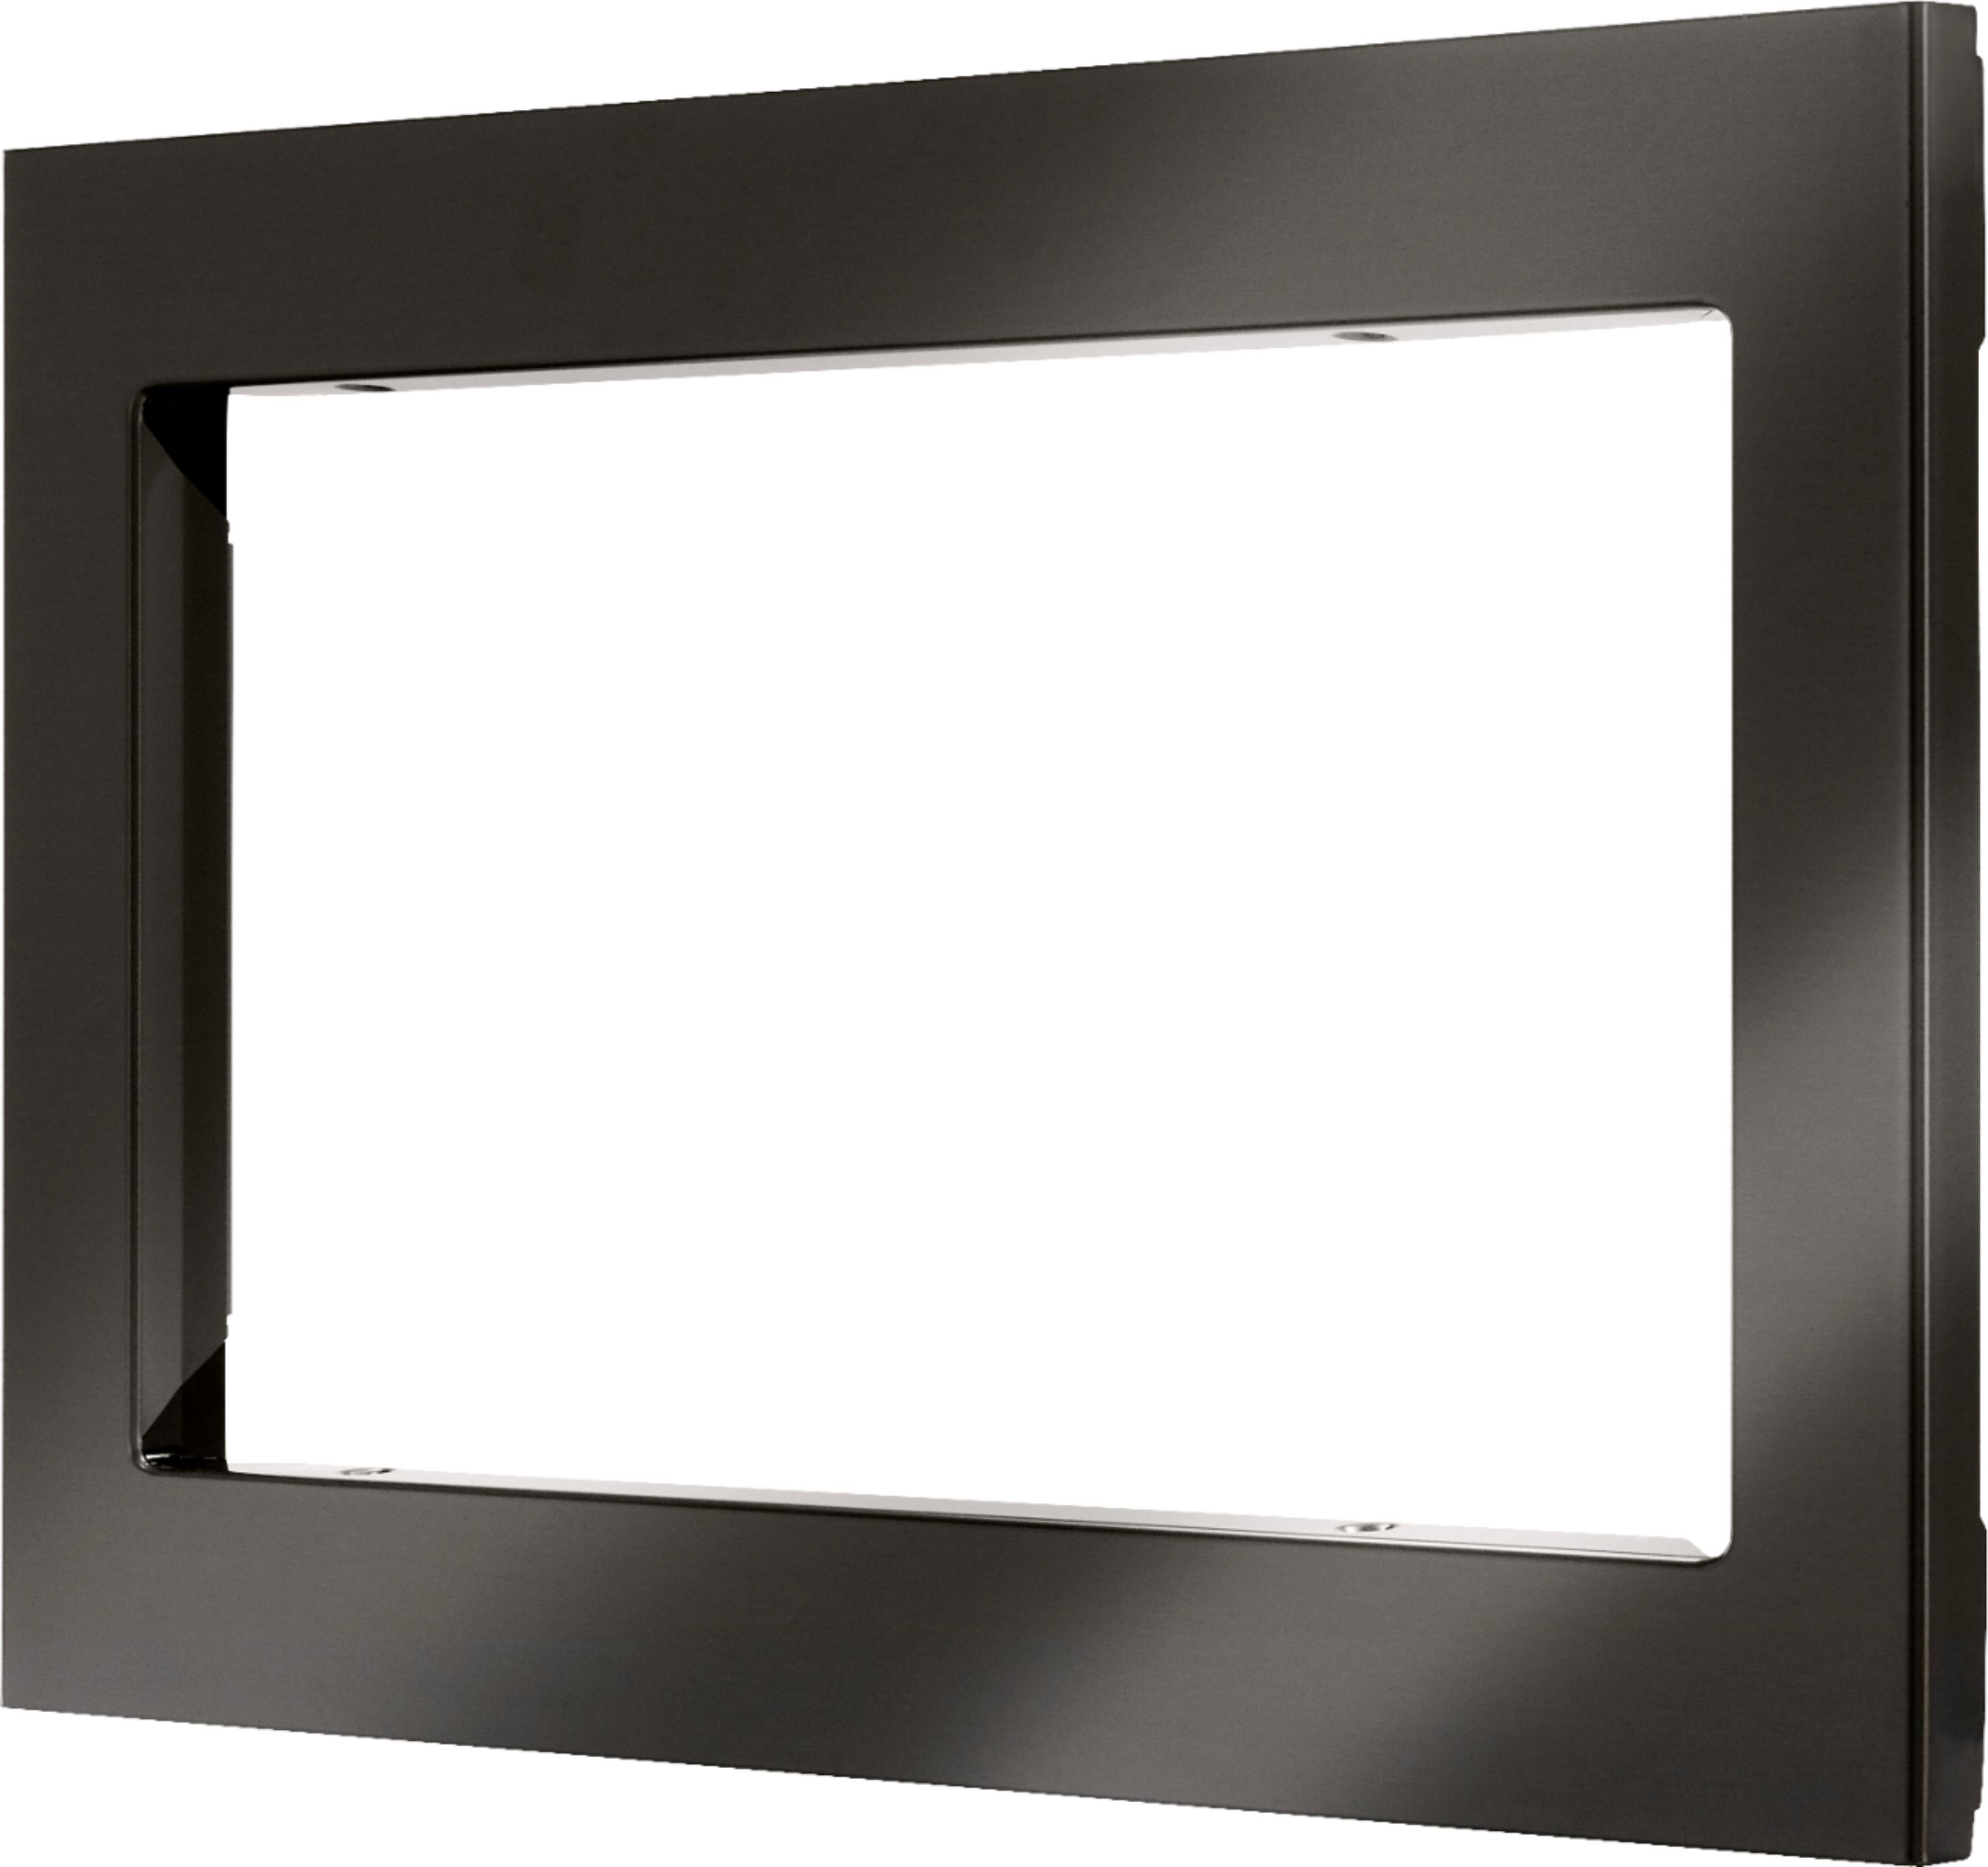 Left View: Door Panel Kit for Fisher & Paykel Refrigerators / Freezers - Stainless steel